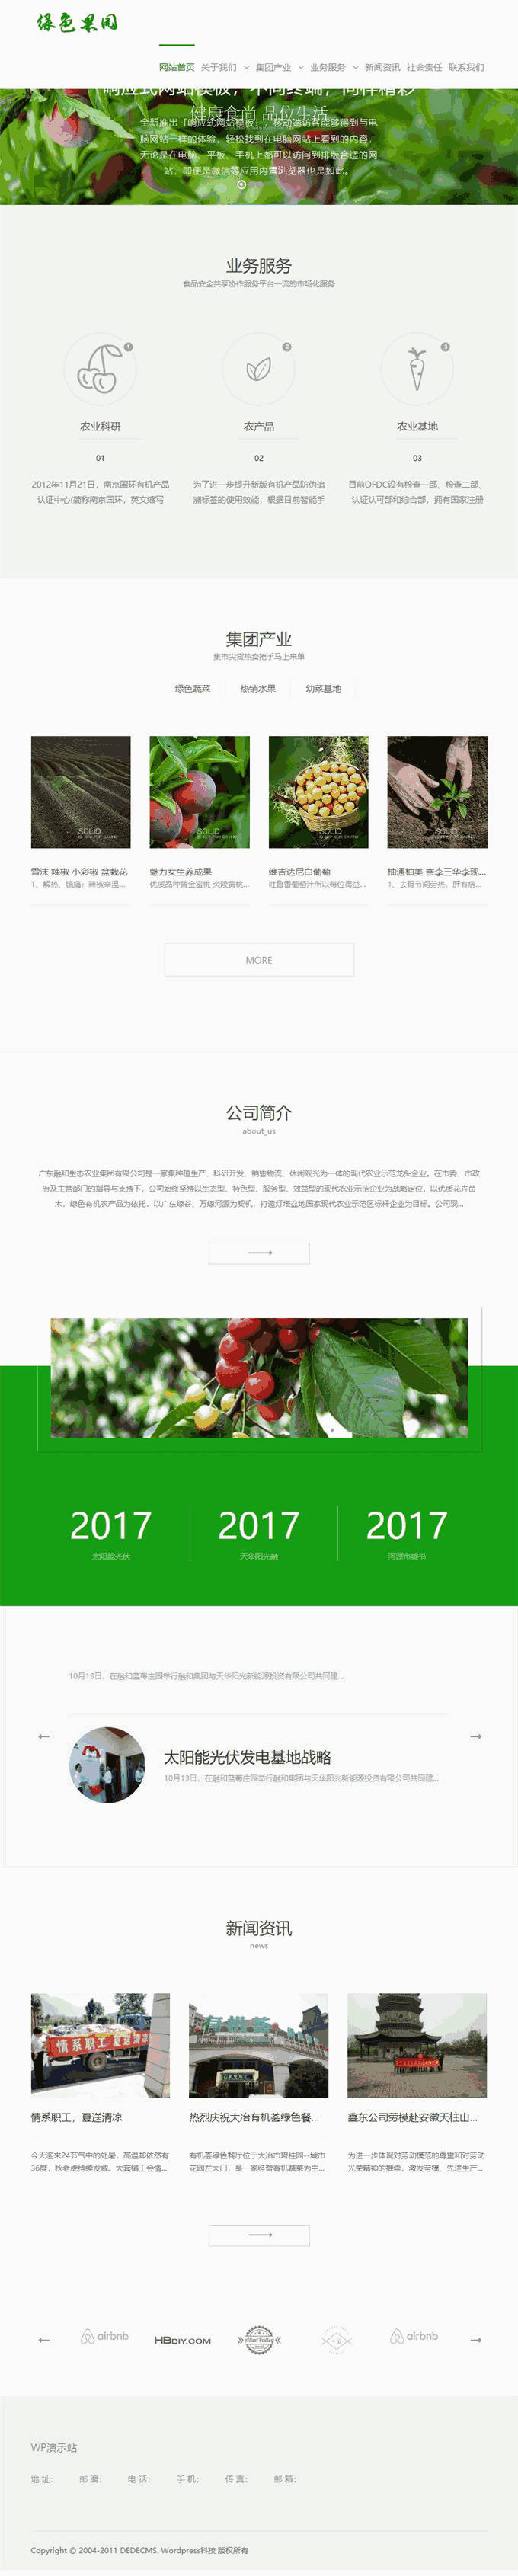 绿色果园农夫果园农业果木企业集团网站主题模板下载演示图